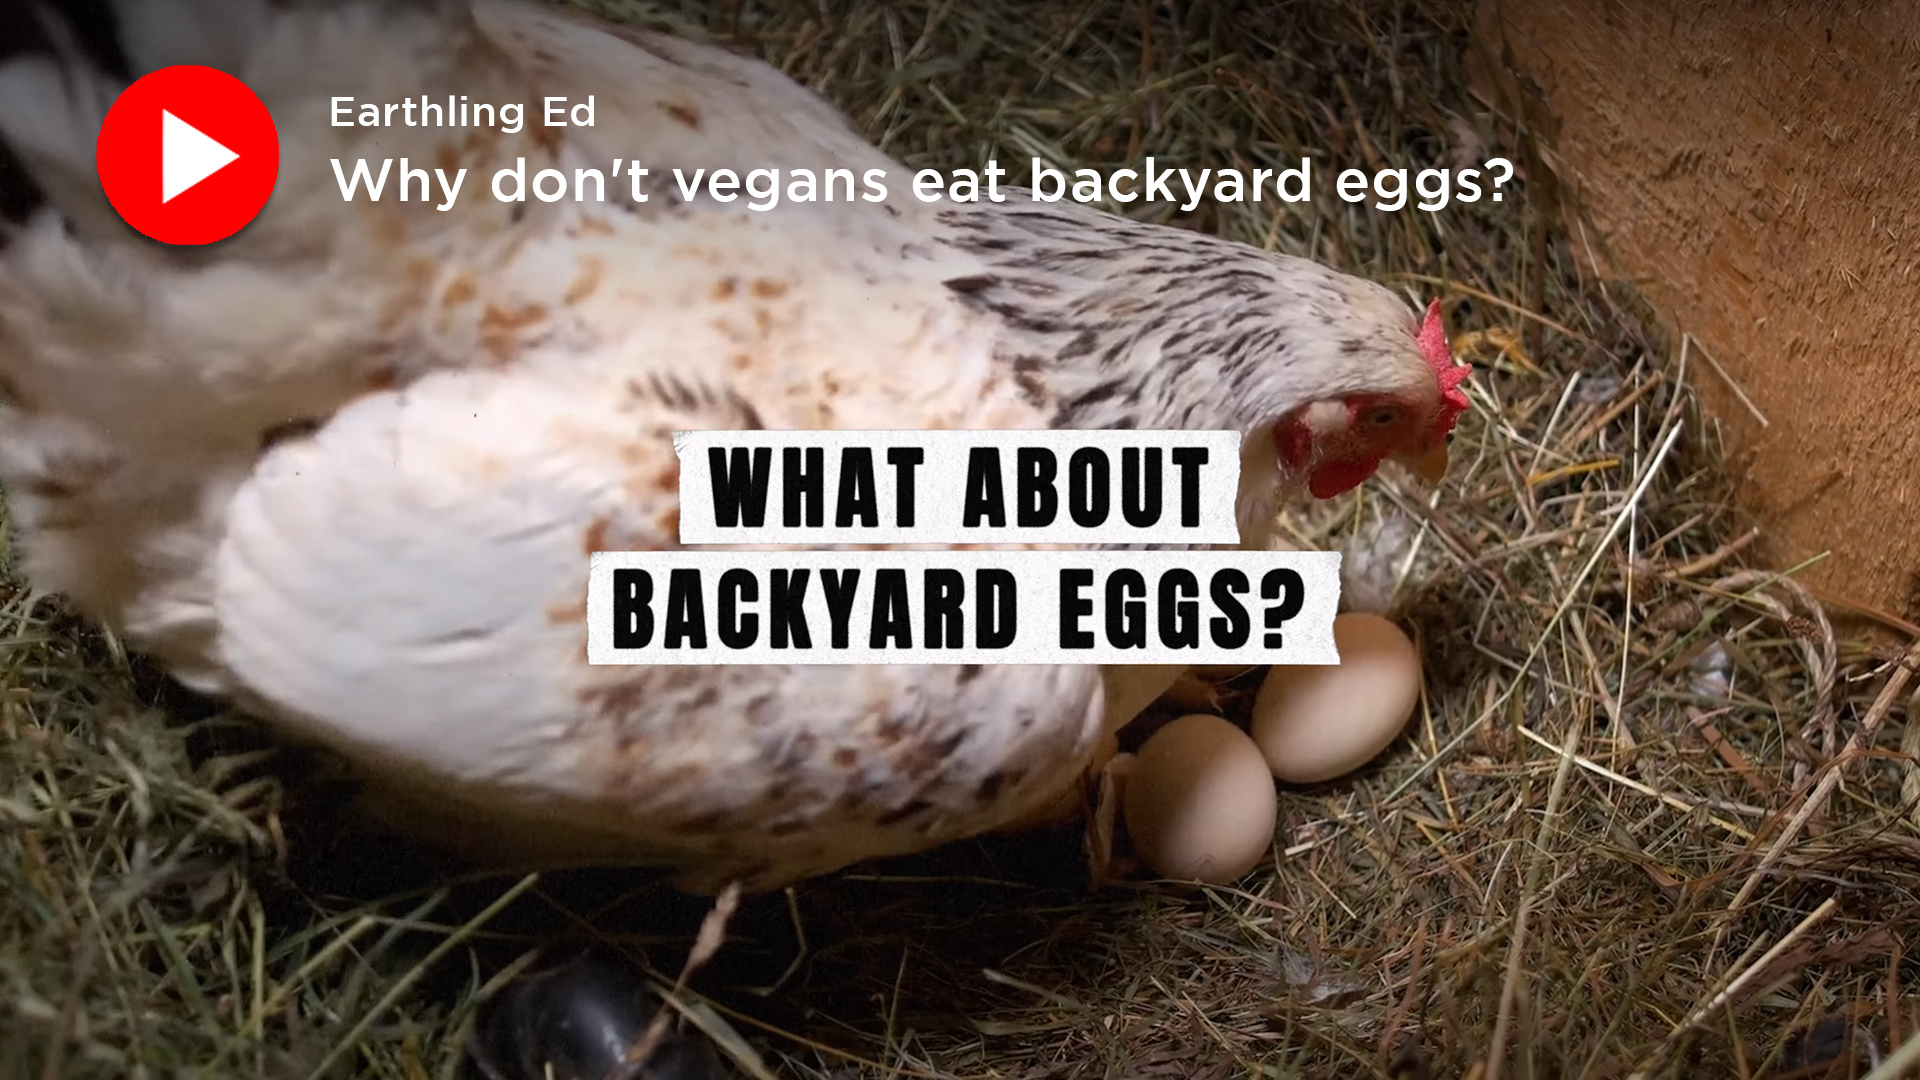 Earthling Ed: Why don't vegans eat backyard eggs?